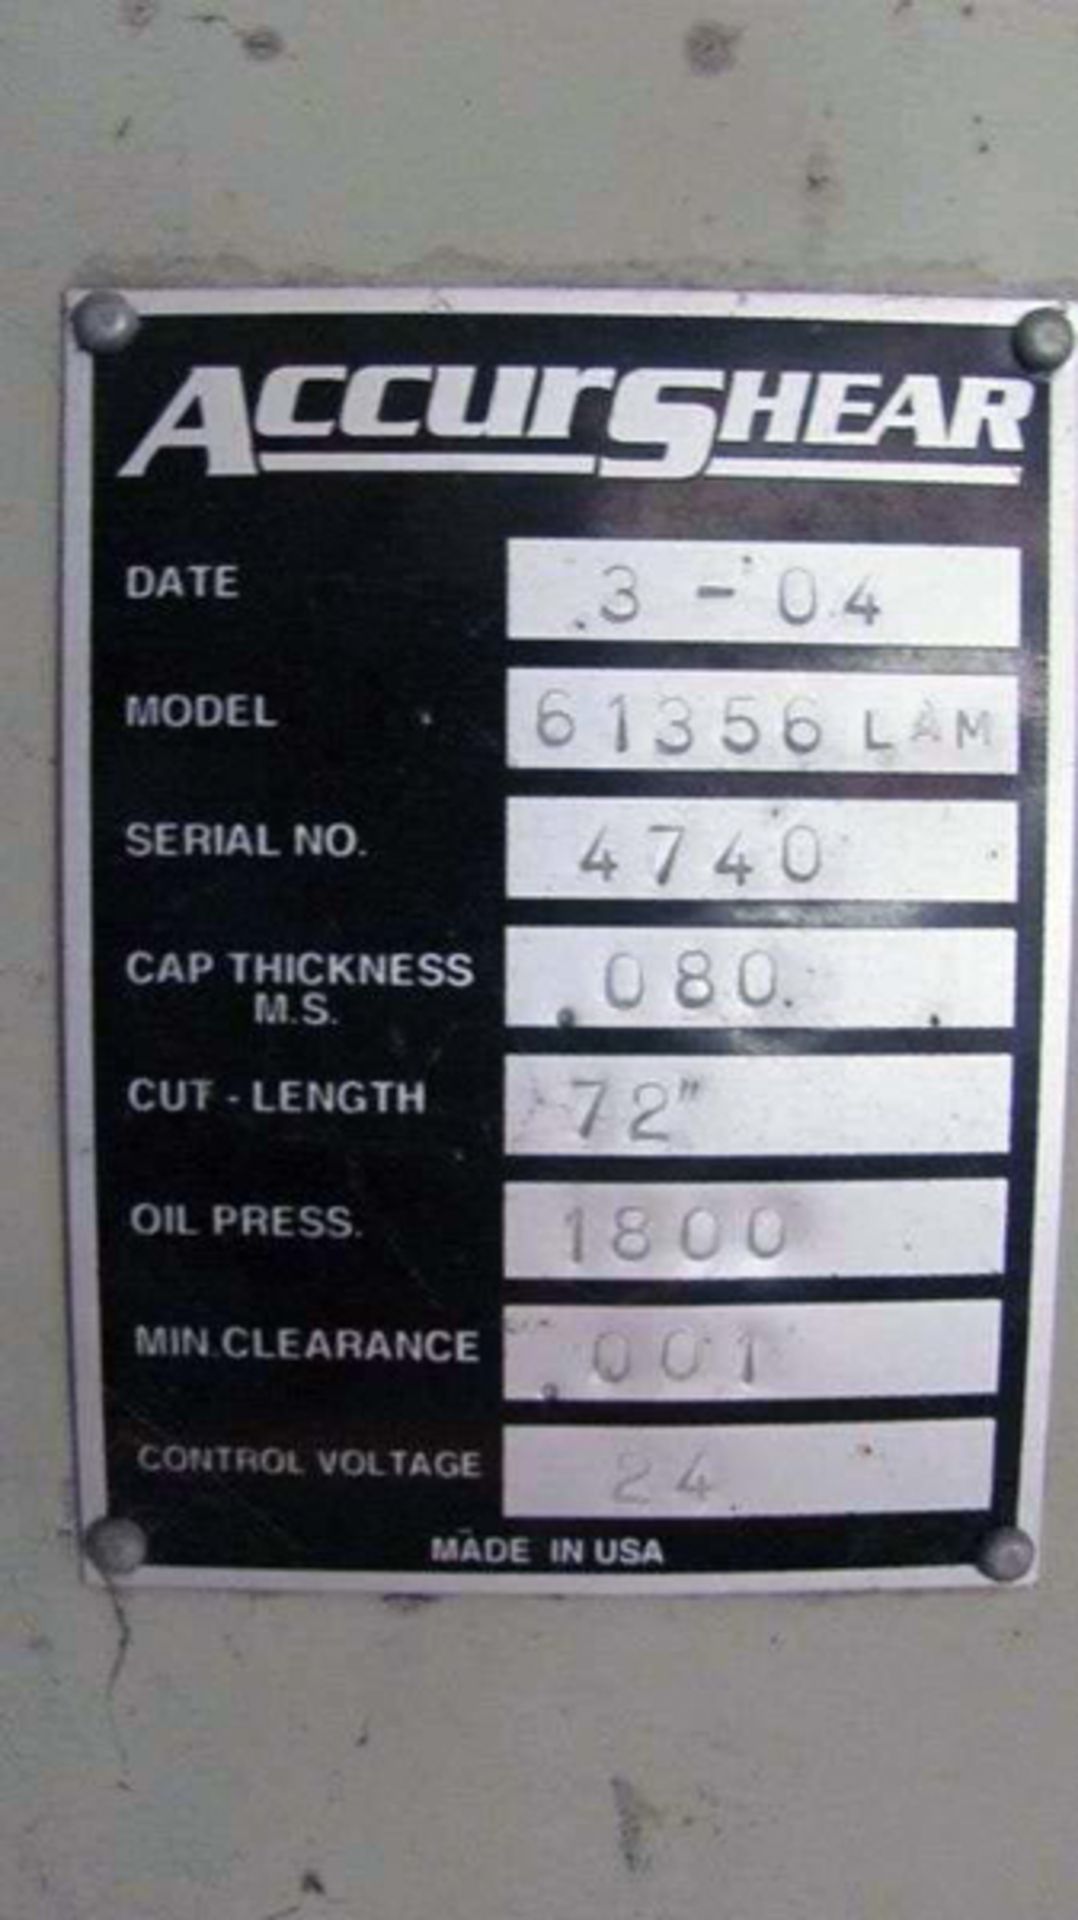 2004 Accurshear Hydraulic Power Shear | 14 Ga. x 6', Mdl: 61356 LAM, S/N: 4740, Located In: - Image 4 of 4